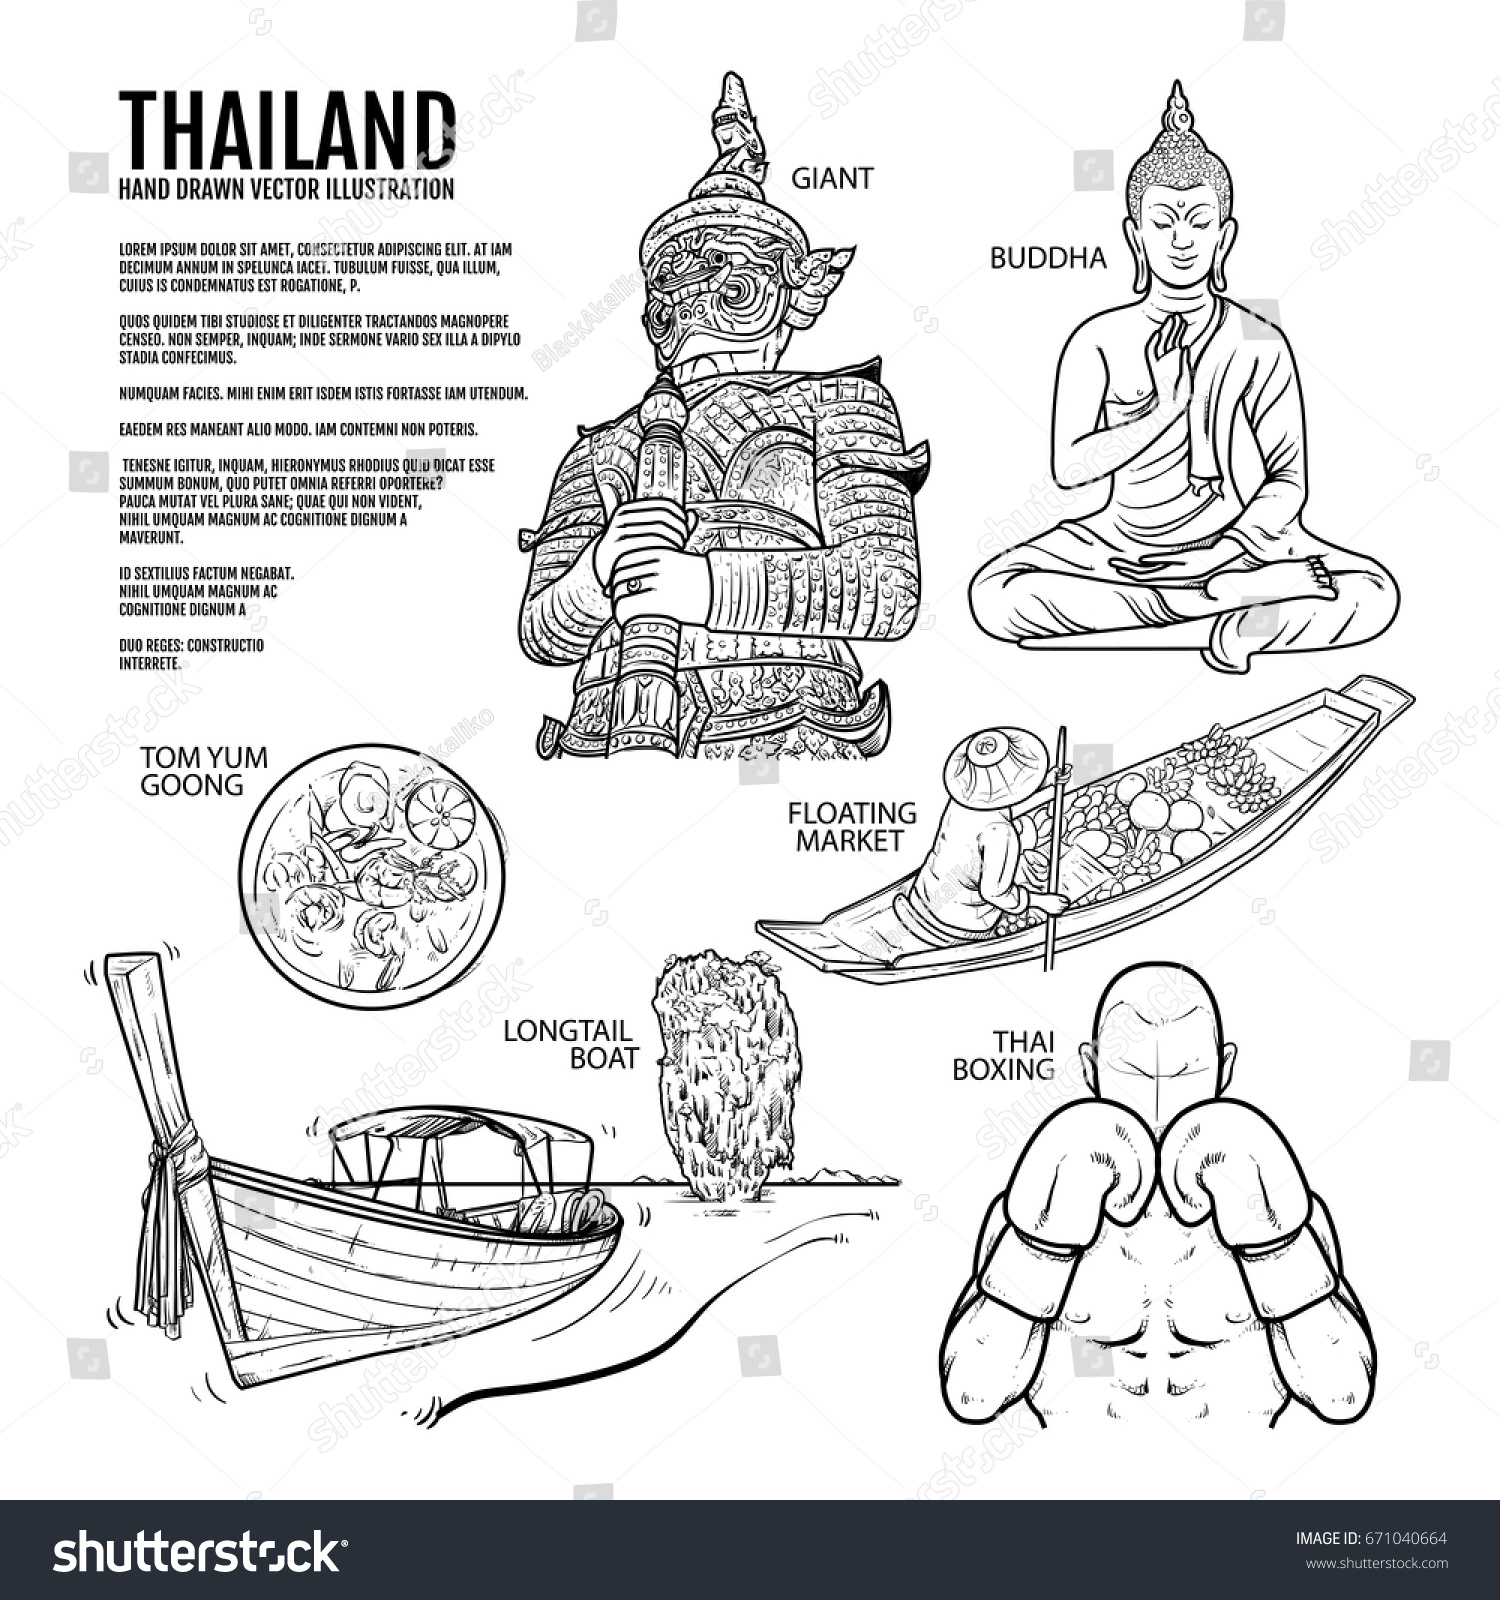 Таиланд рисунок векторный